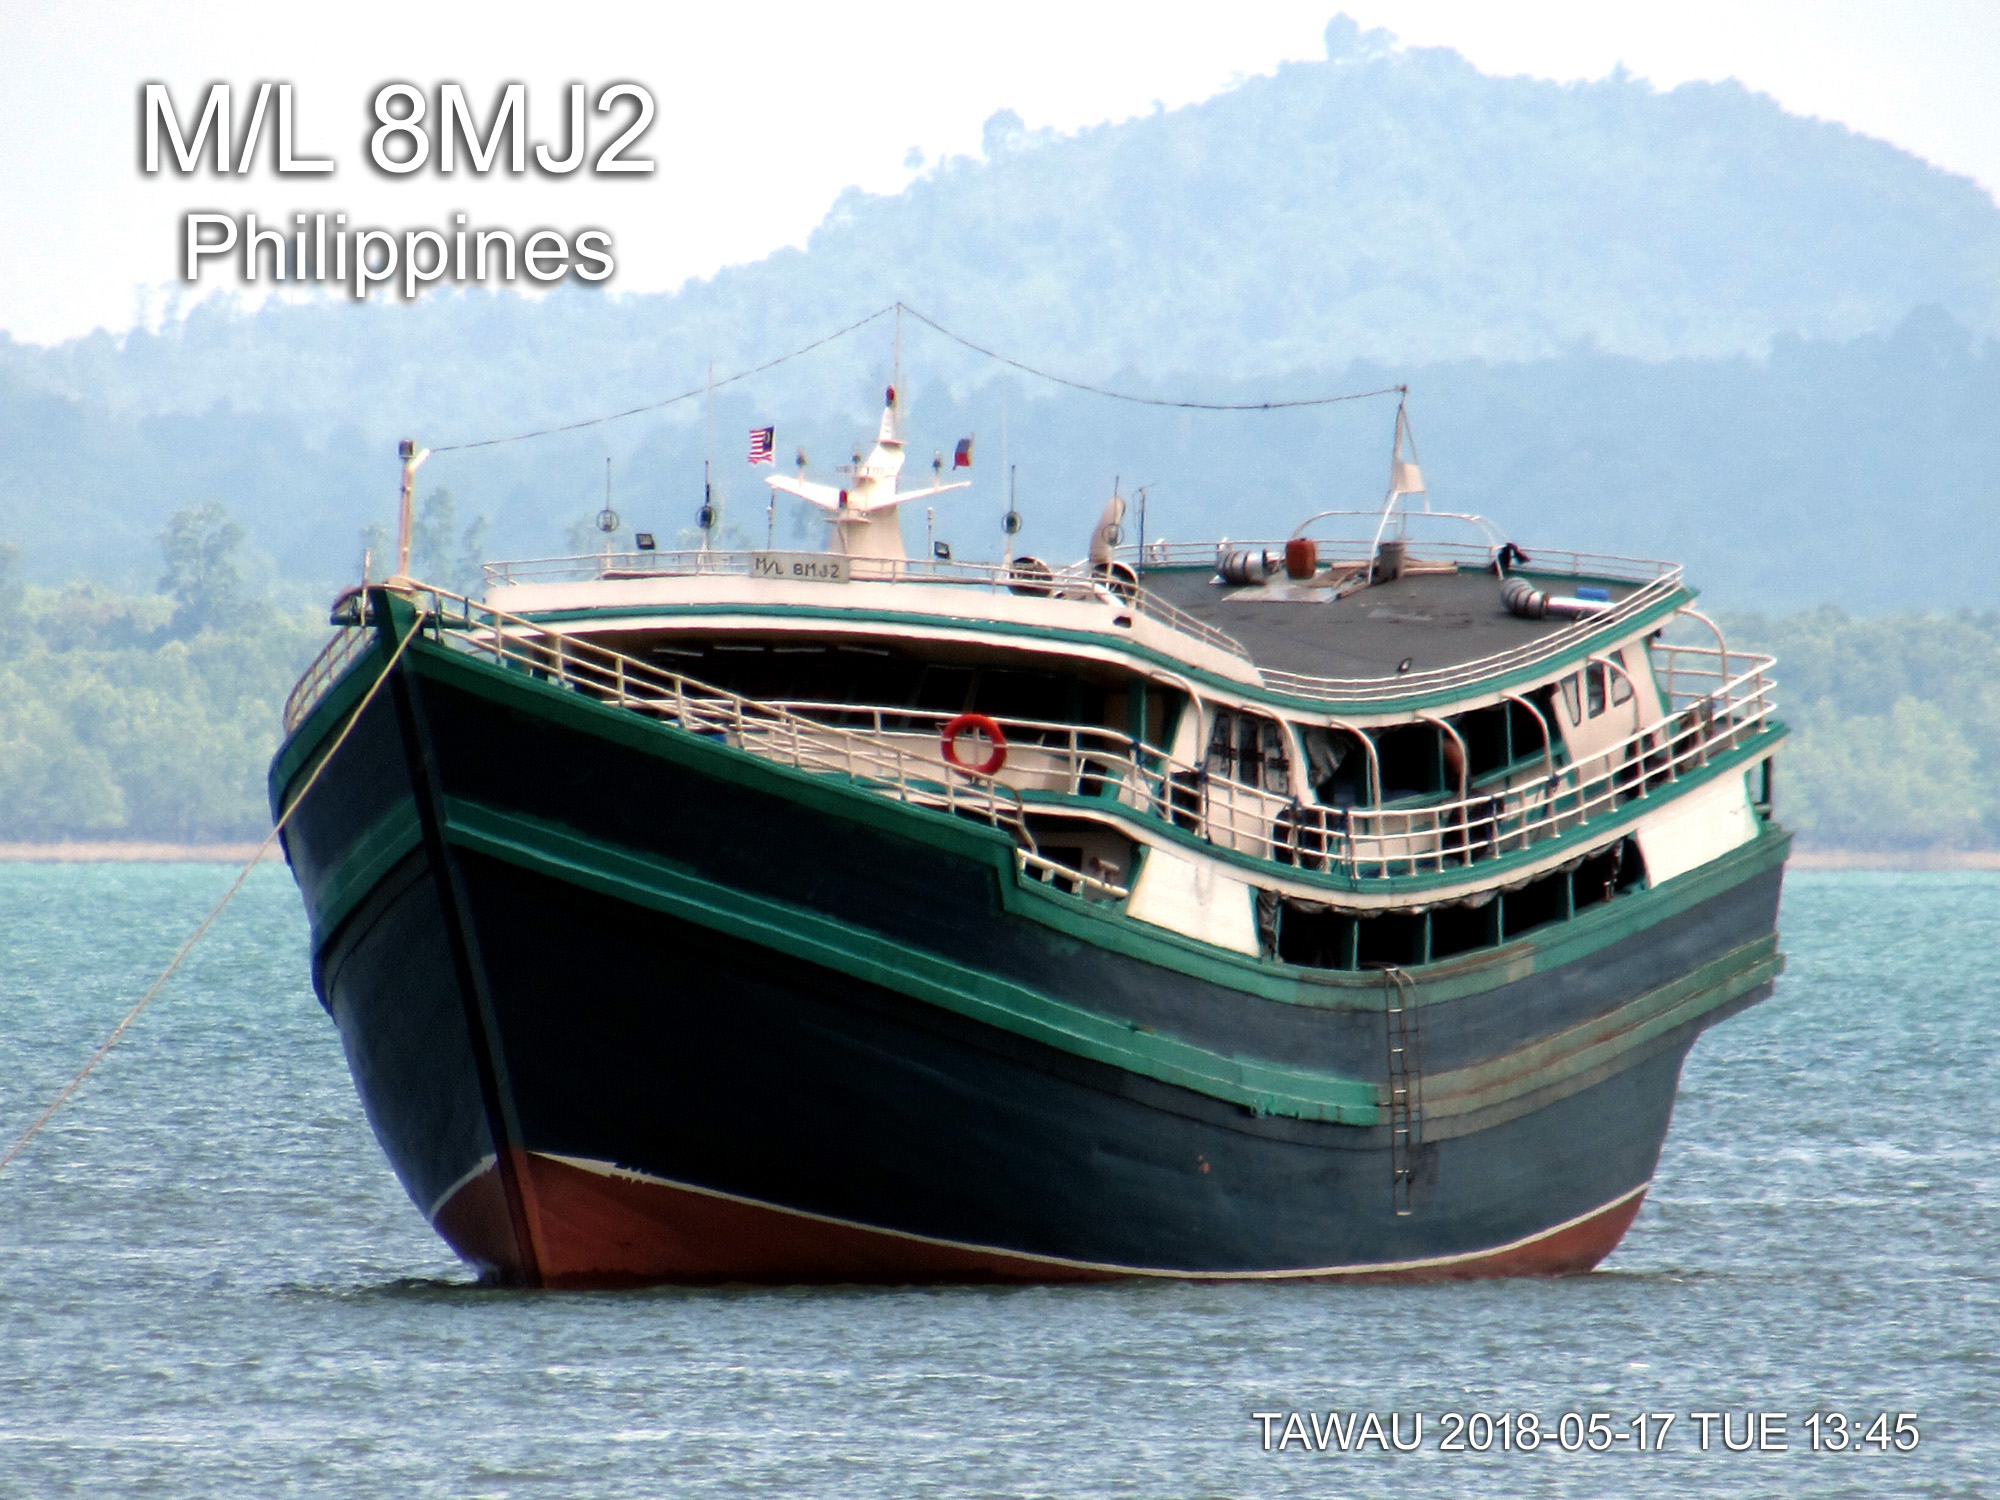 M/L 8MJ2 Philippines